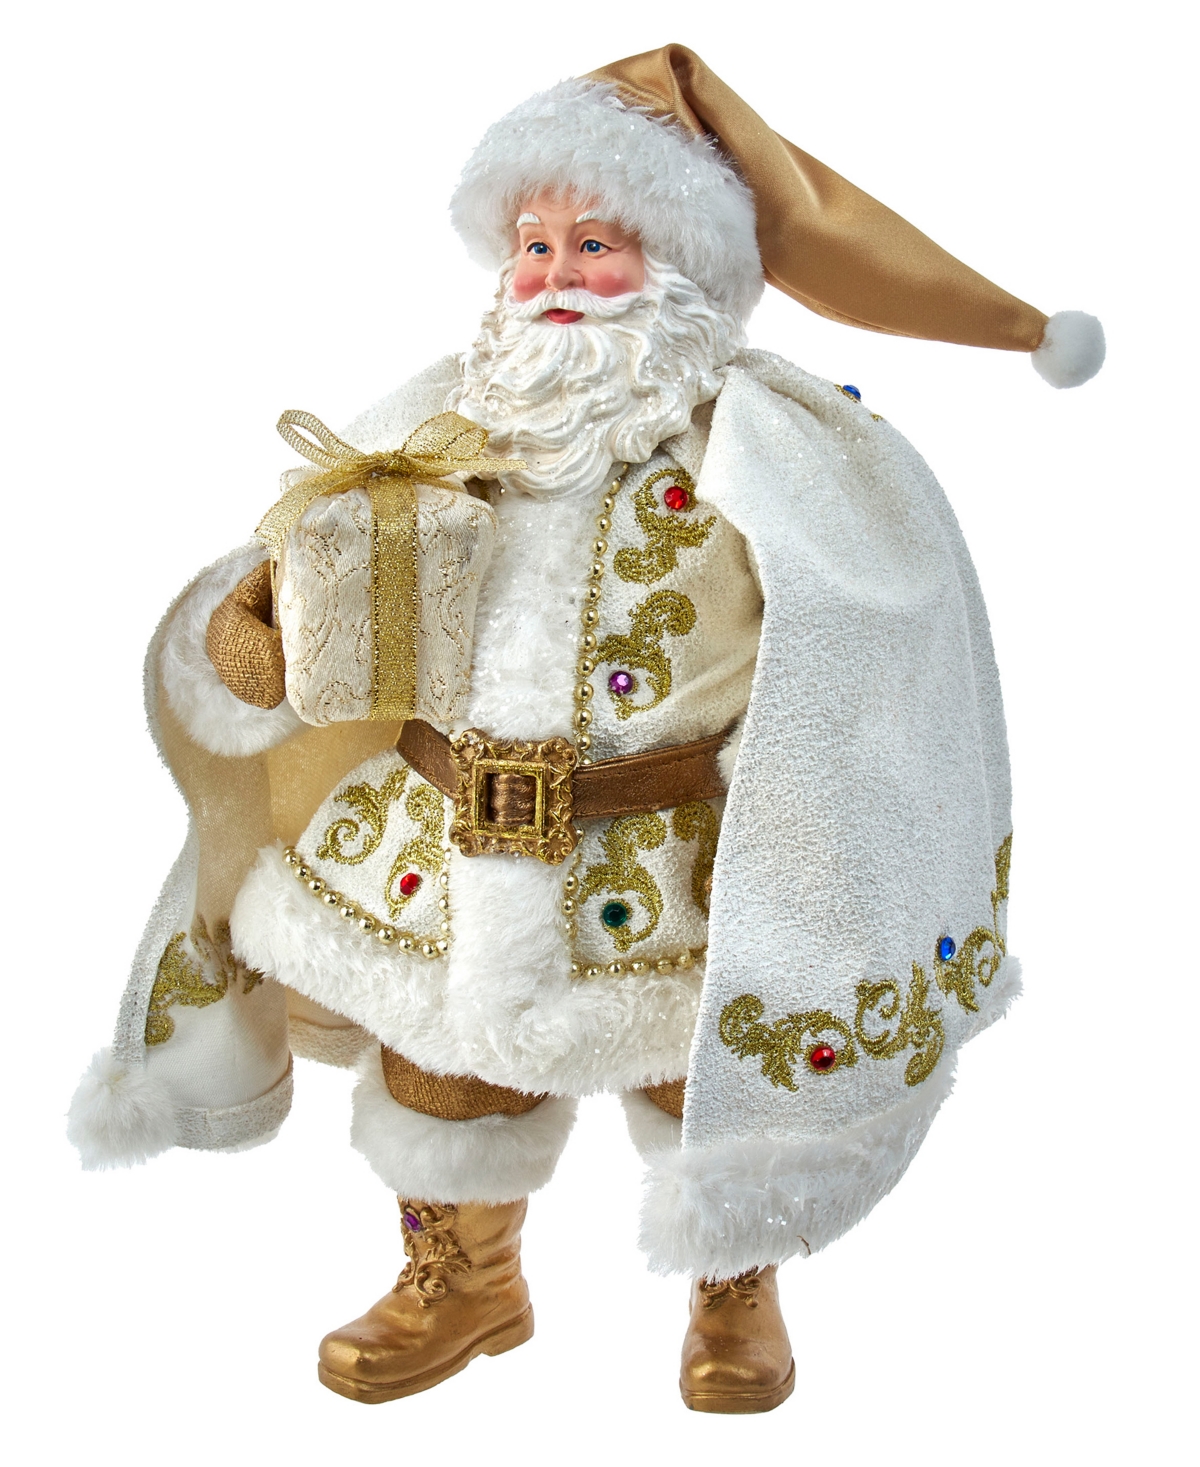 Kurt Adler 10.5" Fabriche Santa In Multicolored